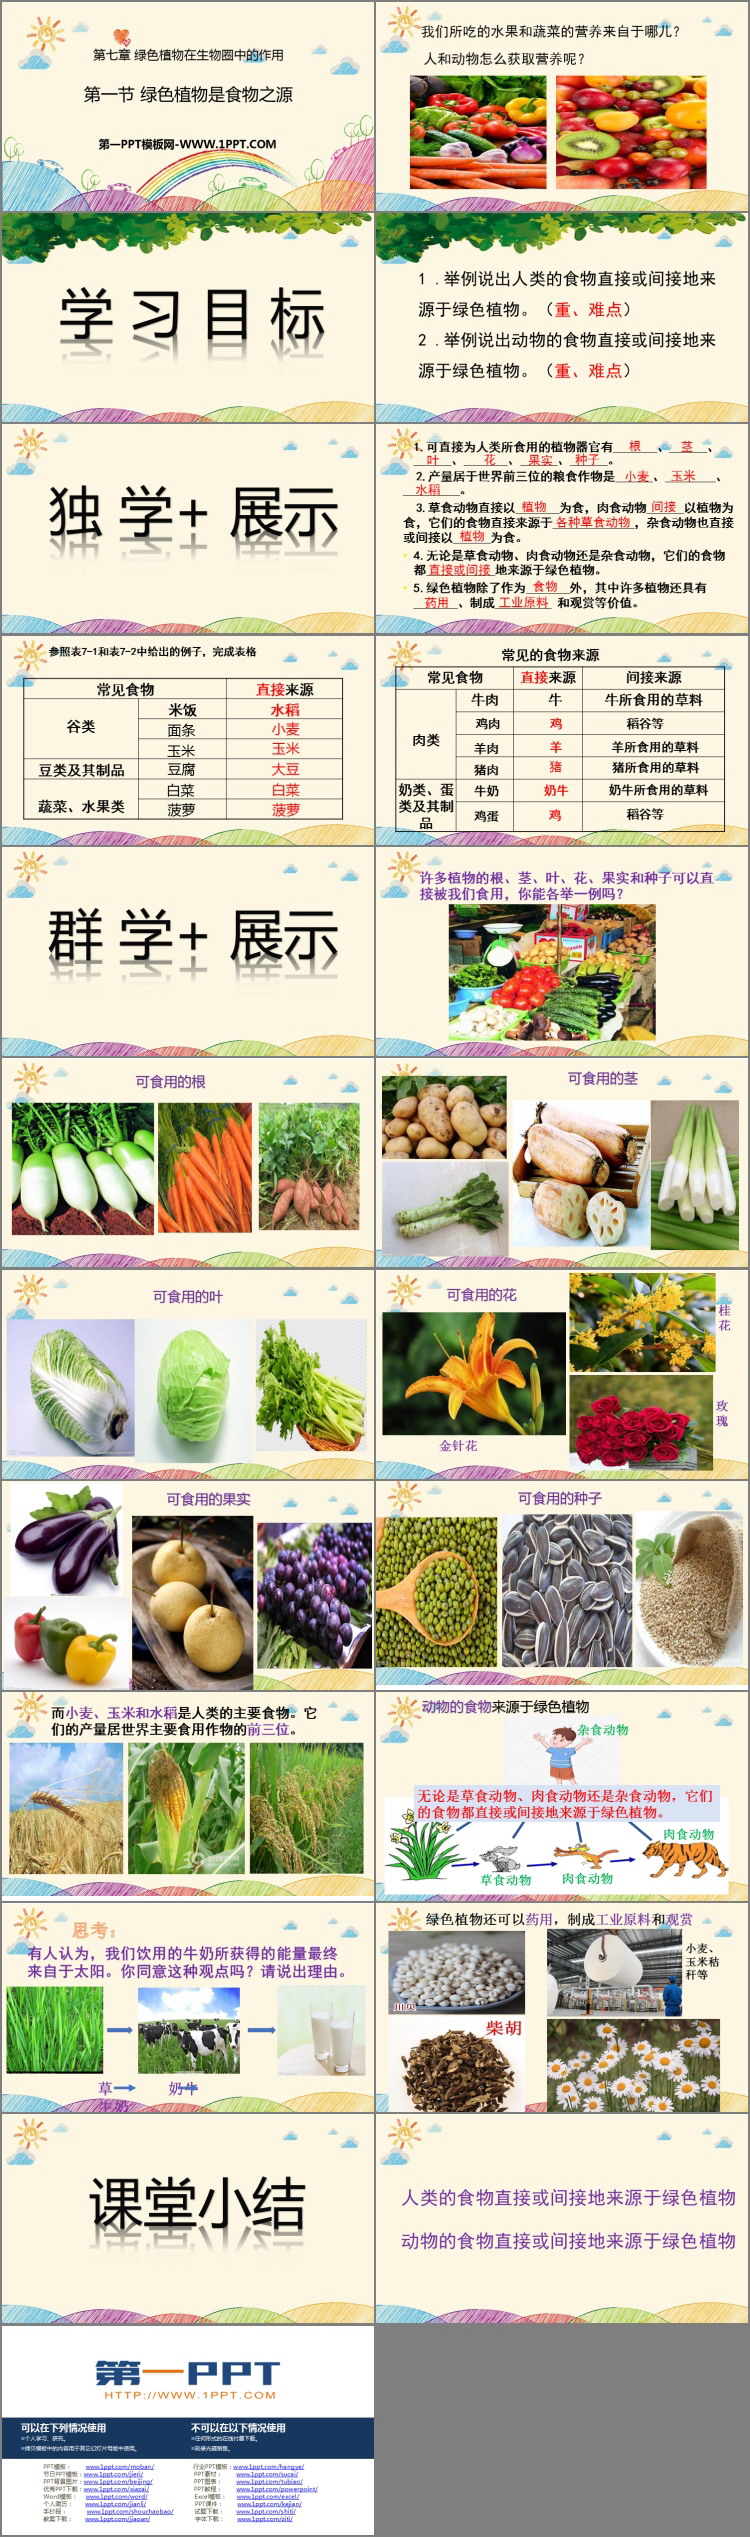 《绿色植物是食物之源》PPT免费课件-预览图02